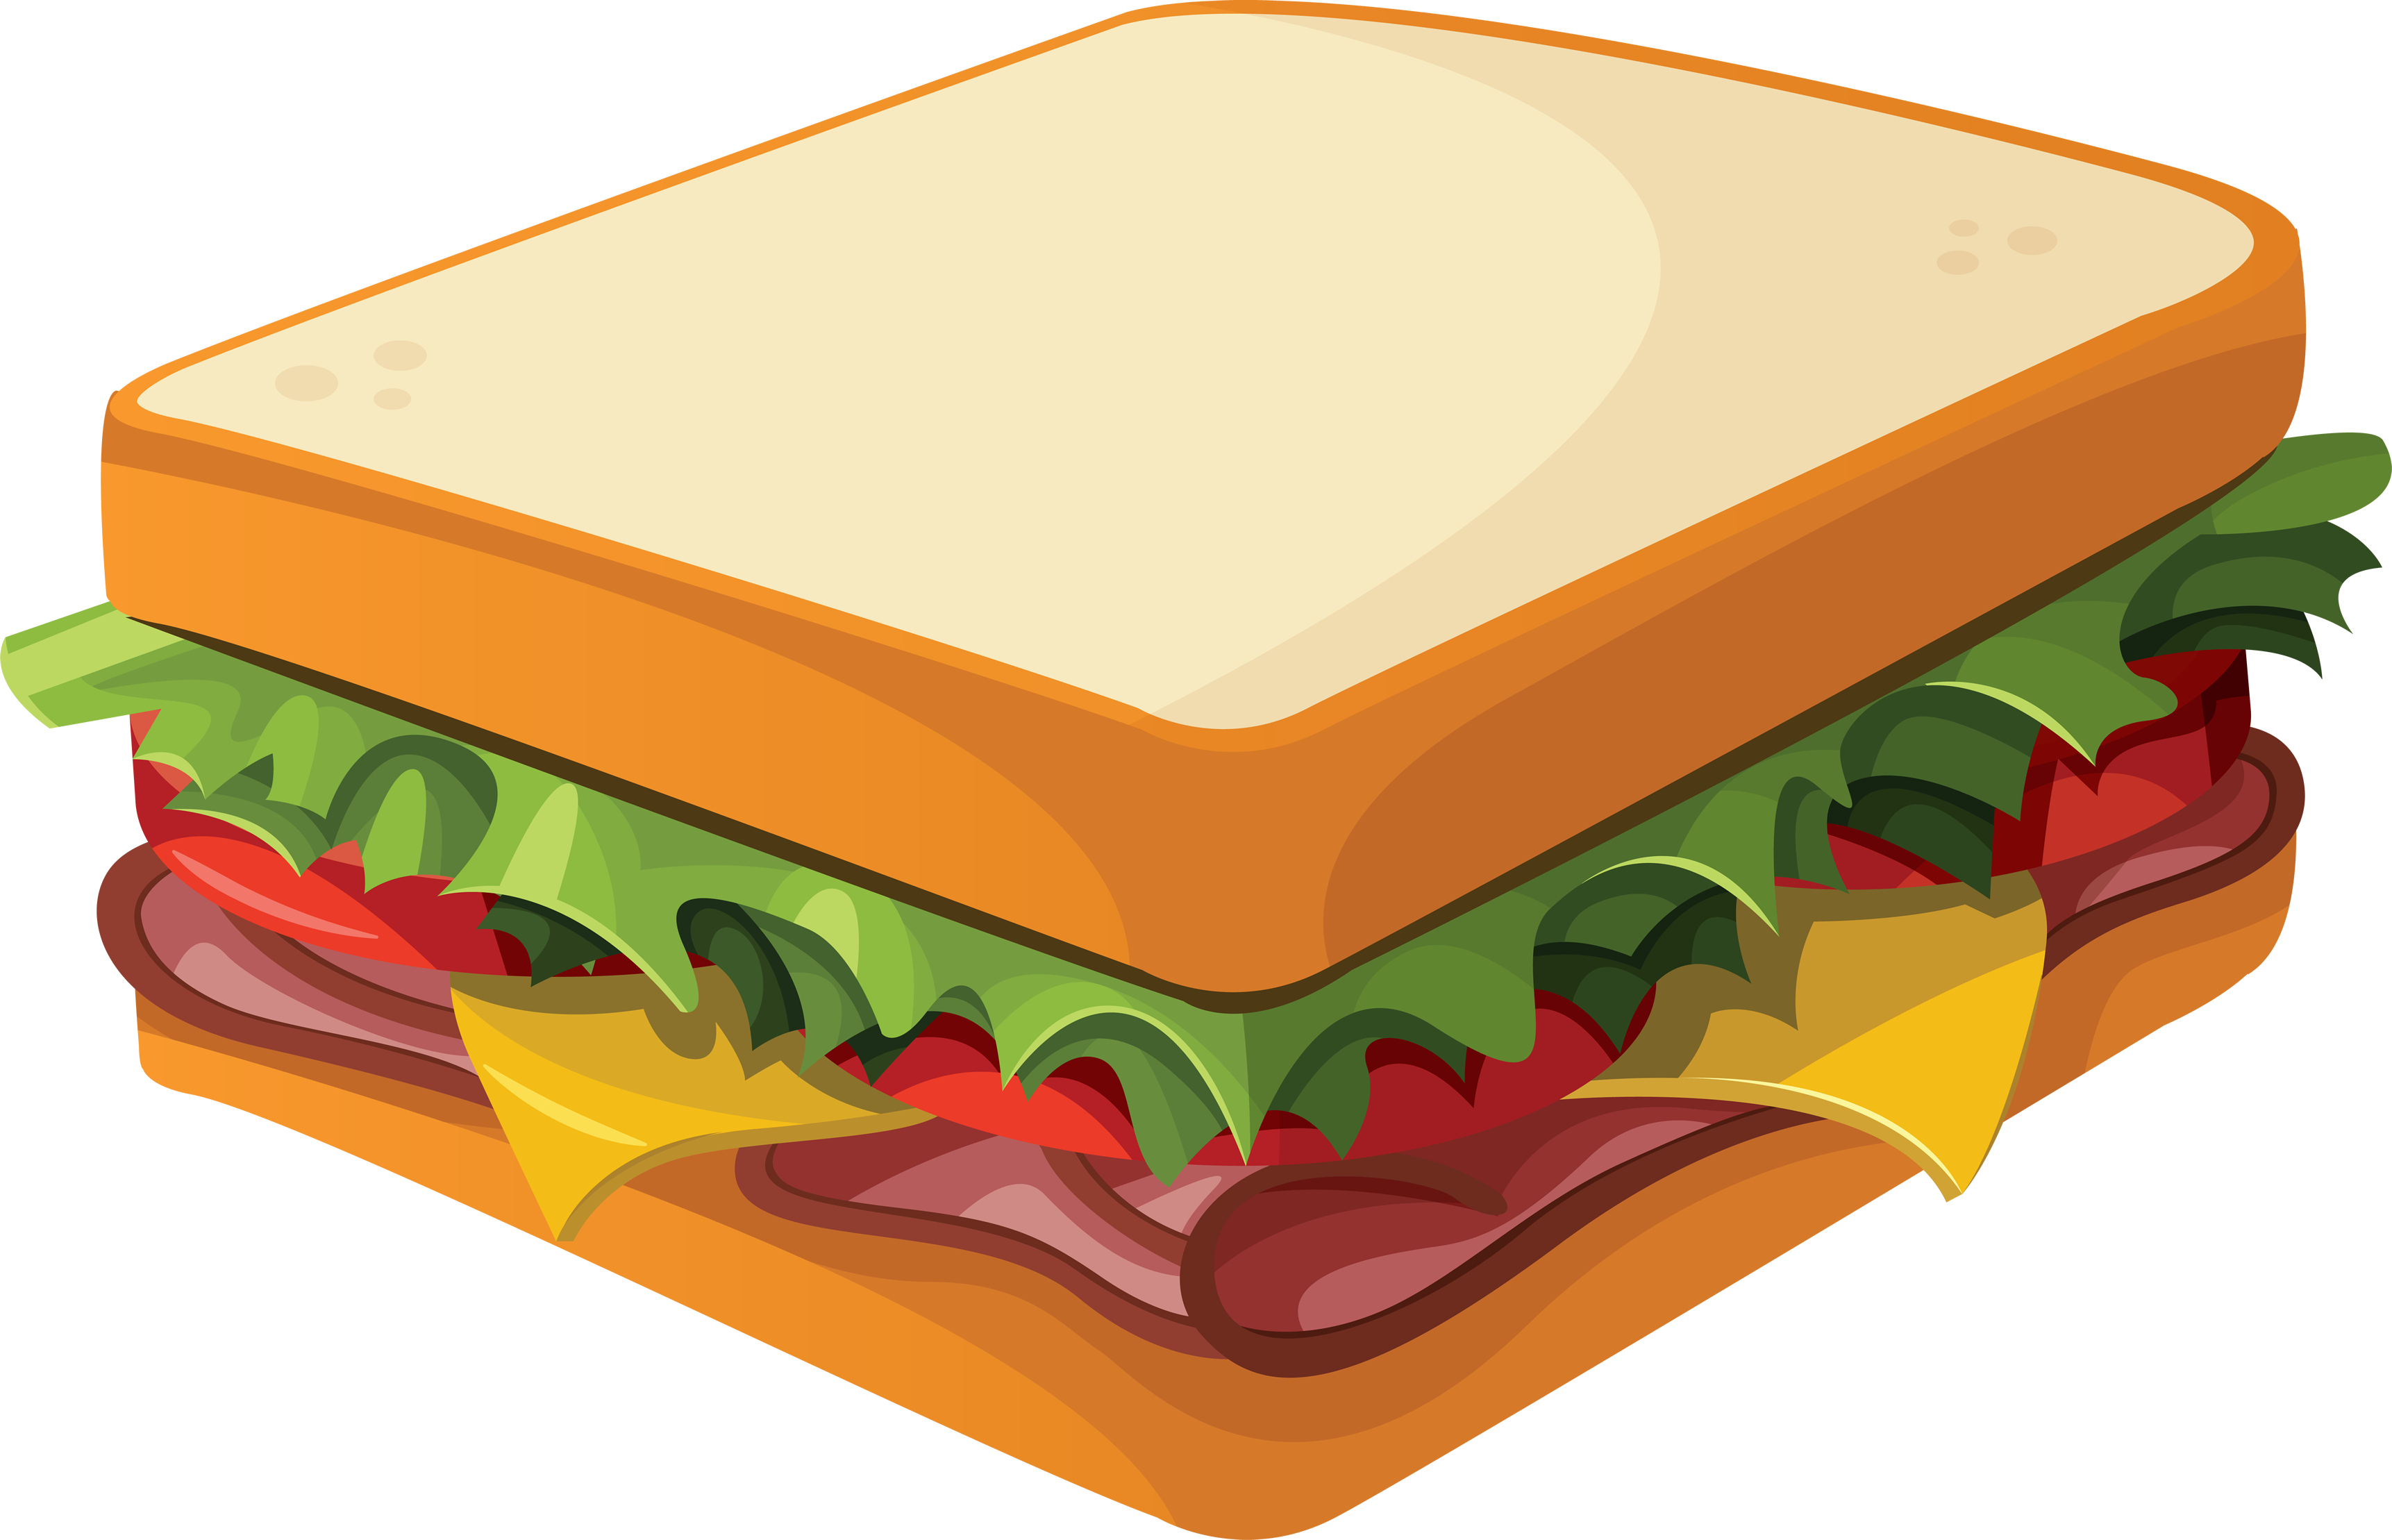 Sub Sandwich Clipart   Cliparts Co